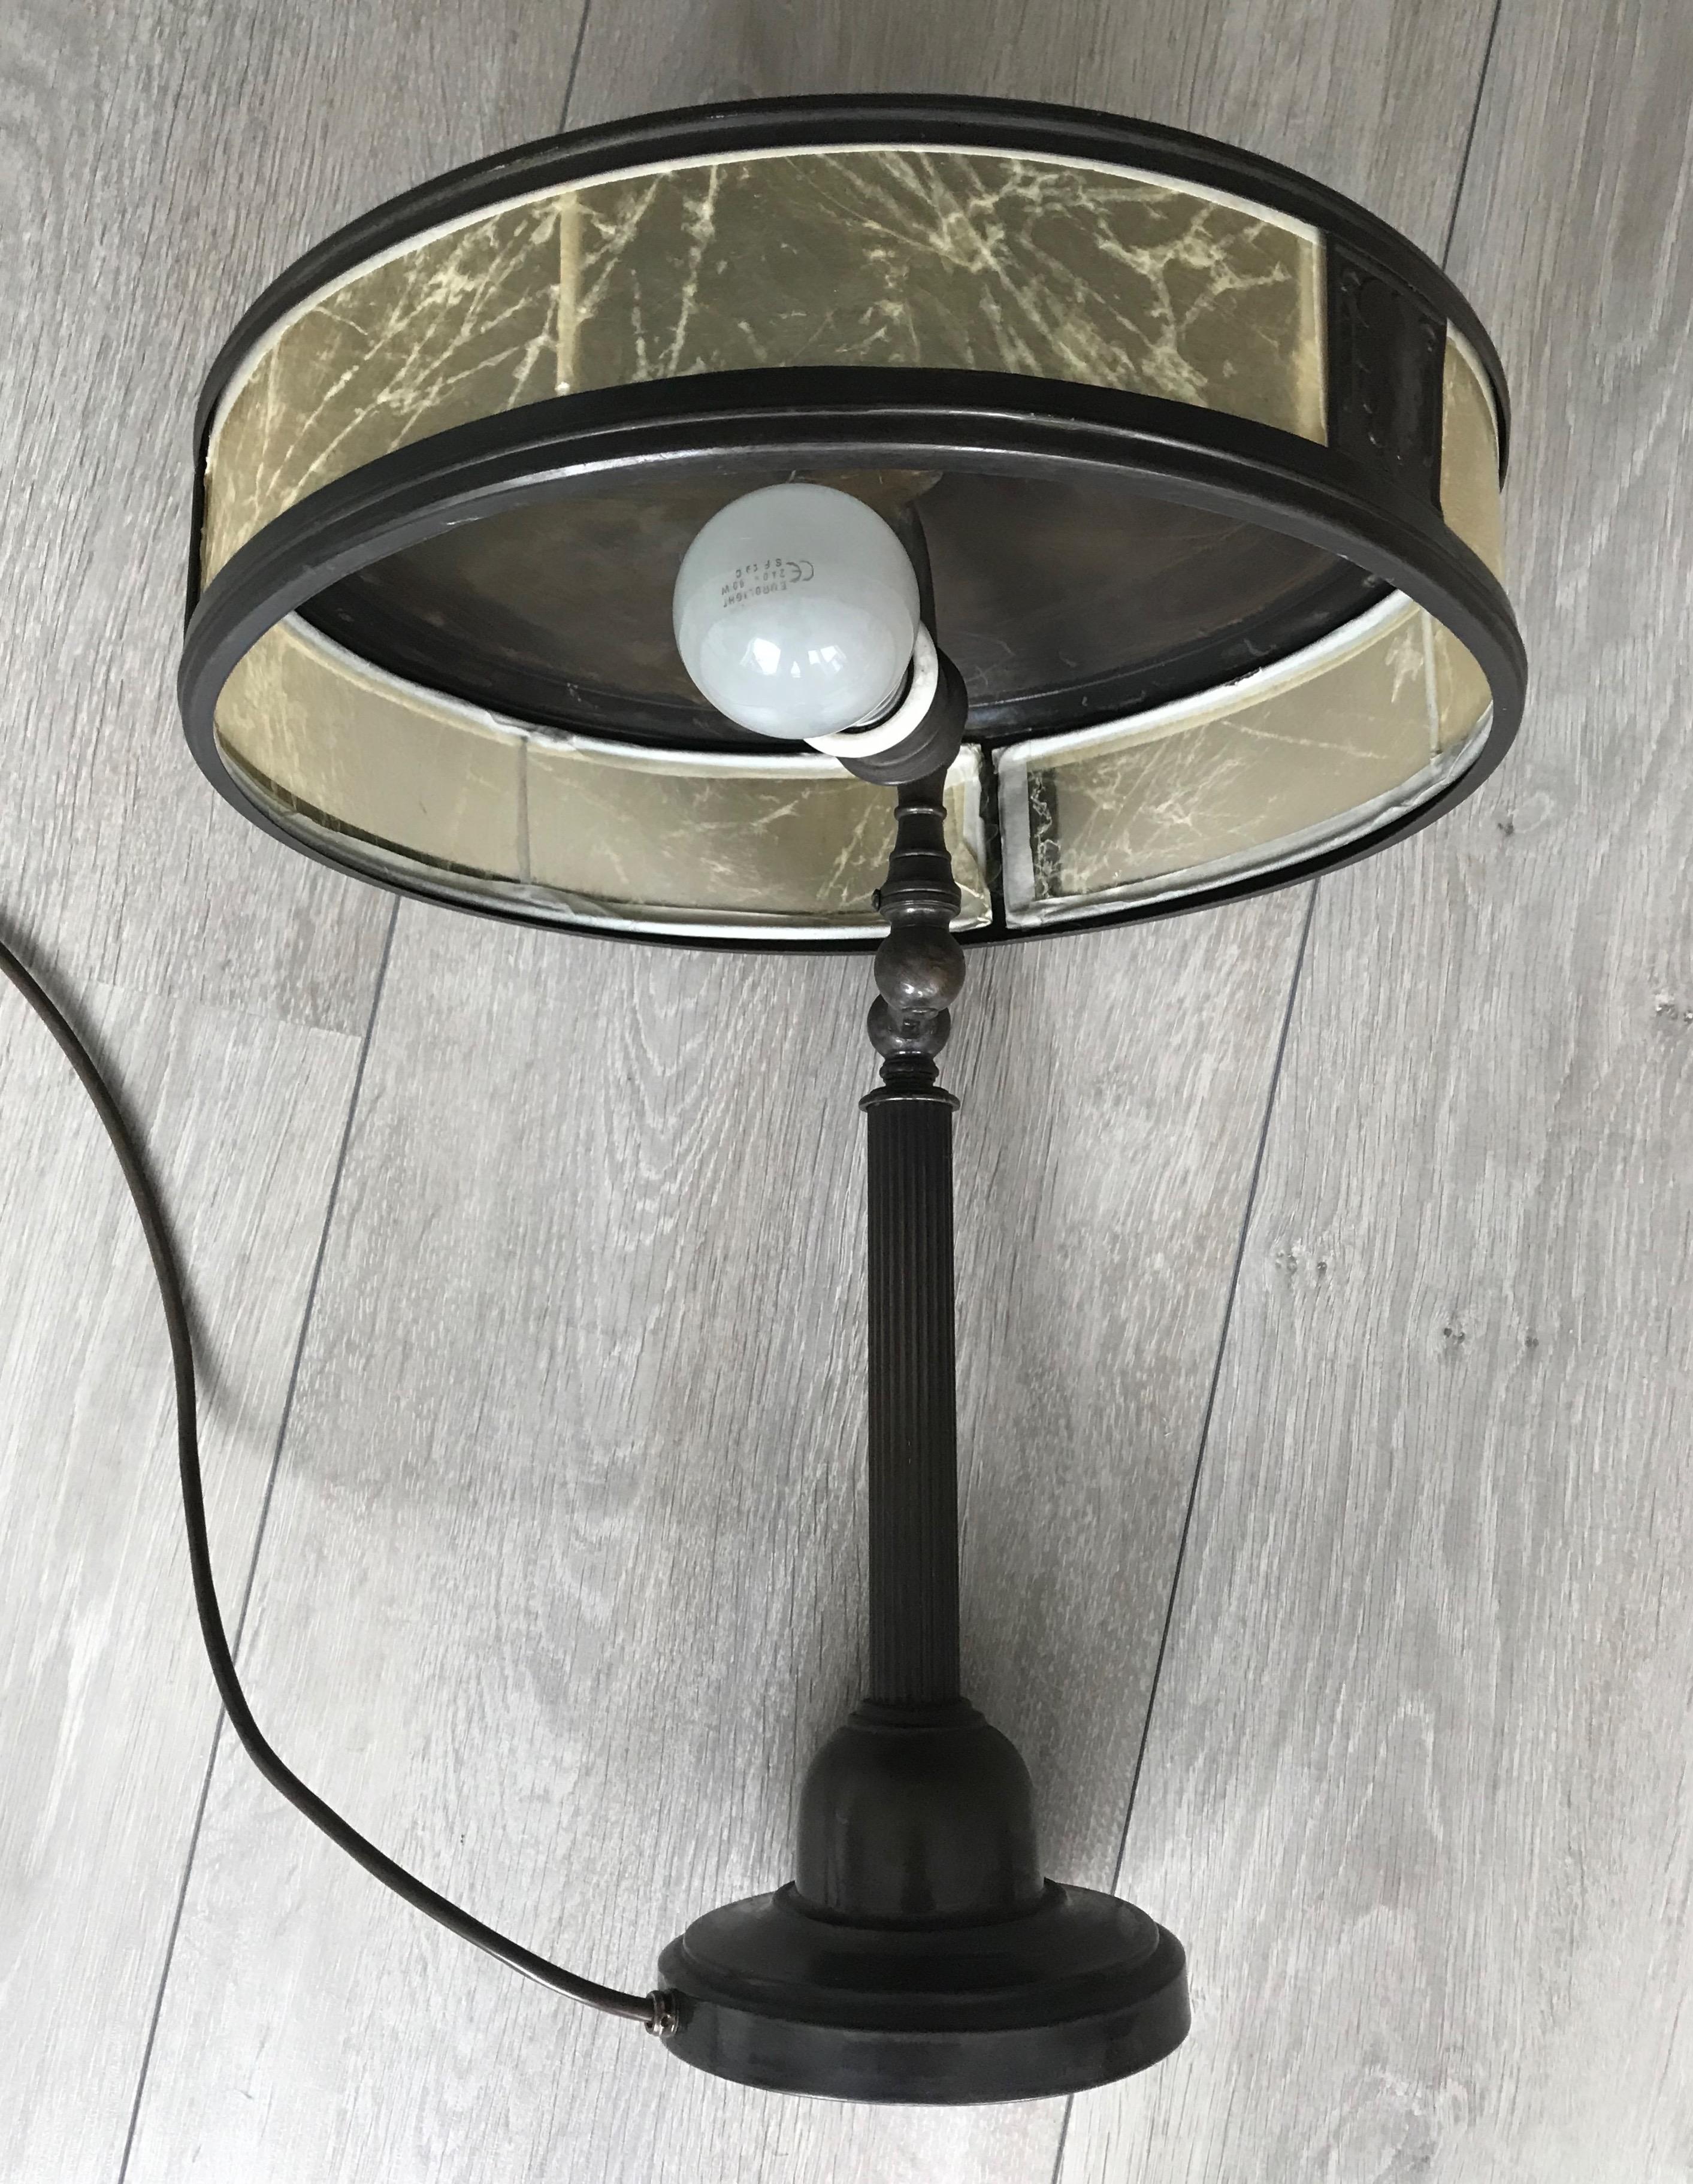 20th Century Jugendstil Era Arts & Crafts Patinated Brass Table or Desk Standard Lamp